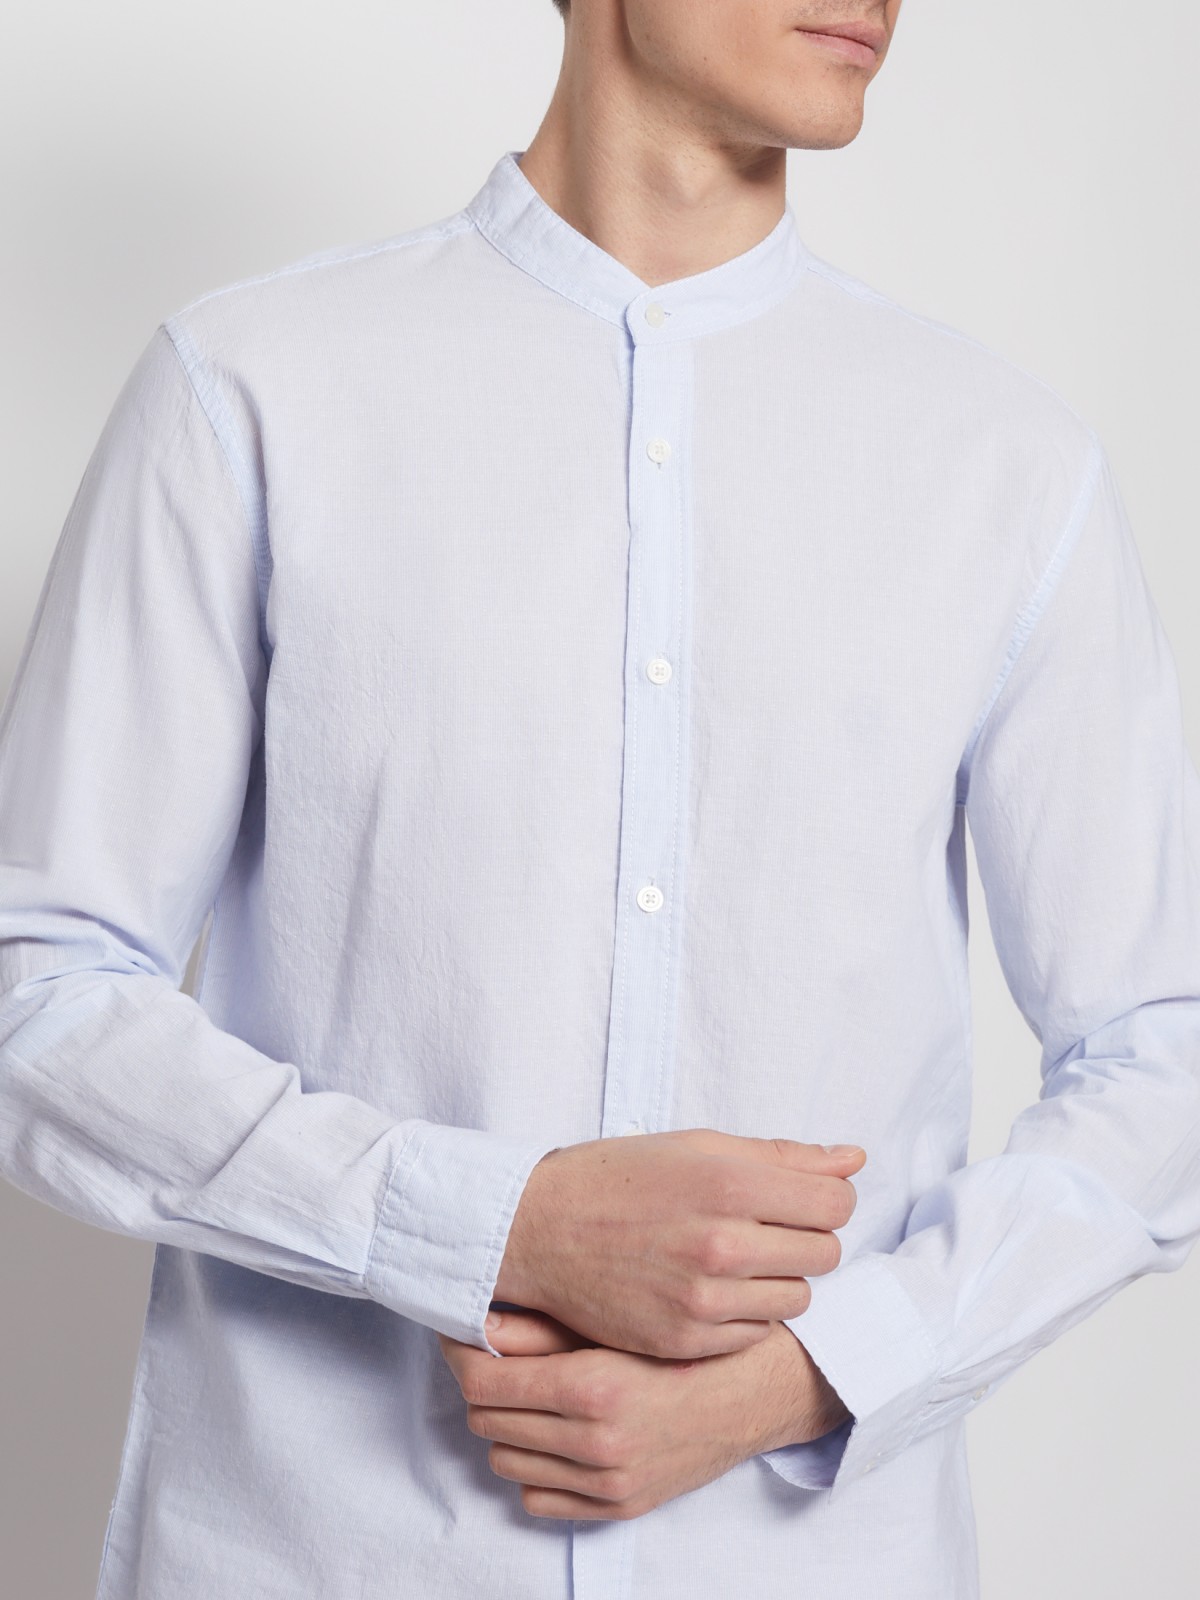 Хлопковая рубашка с длинным рукавом zolla 012232159031, цвет светло-голубой, размер S - фото 5